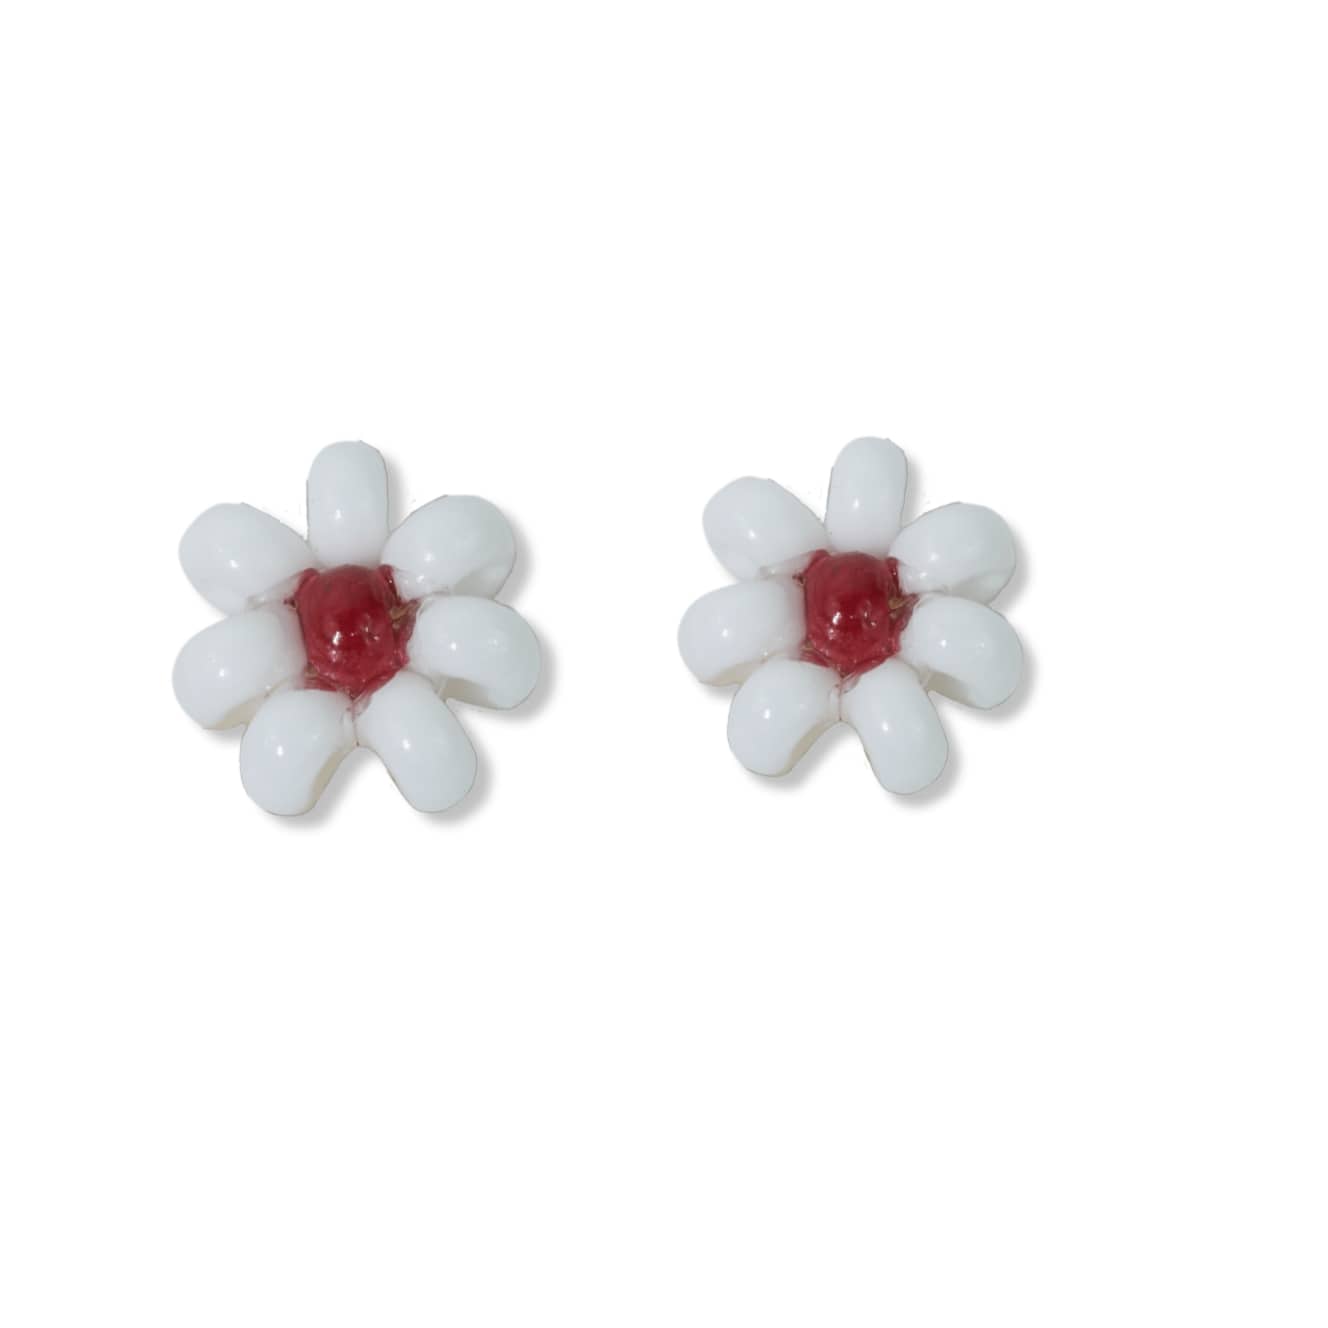 Dark Red Garnet Earring - Large Teardrop – Dames a la Mode